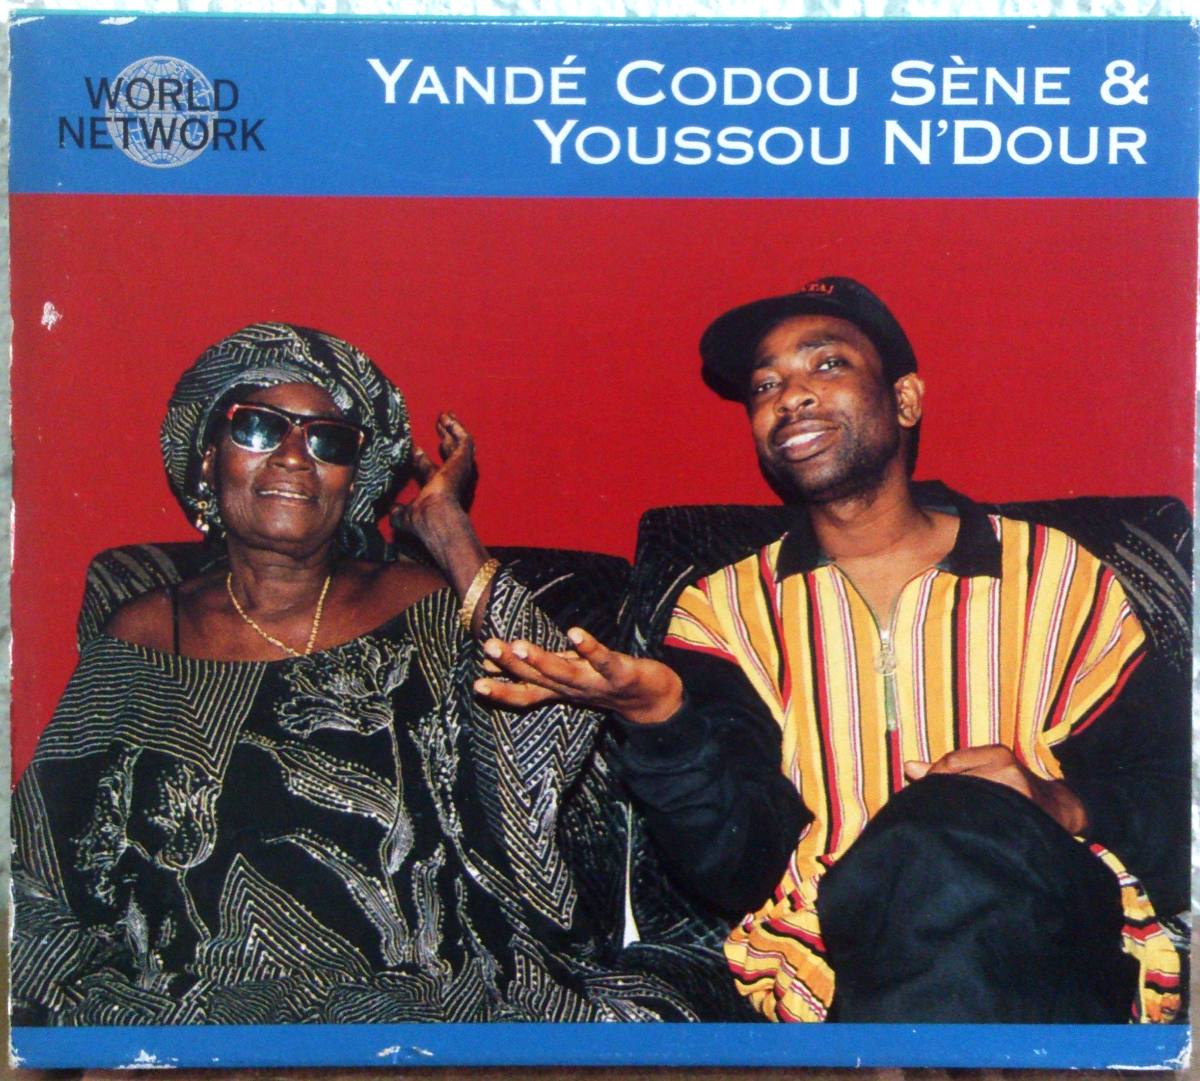 yande codou sene et youssou ndour